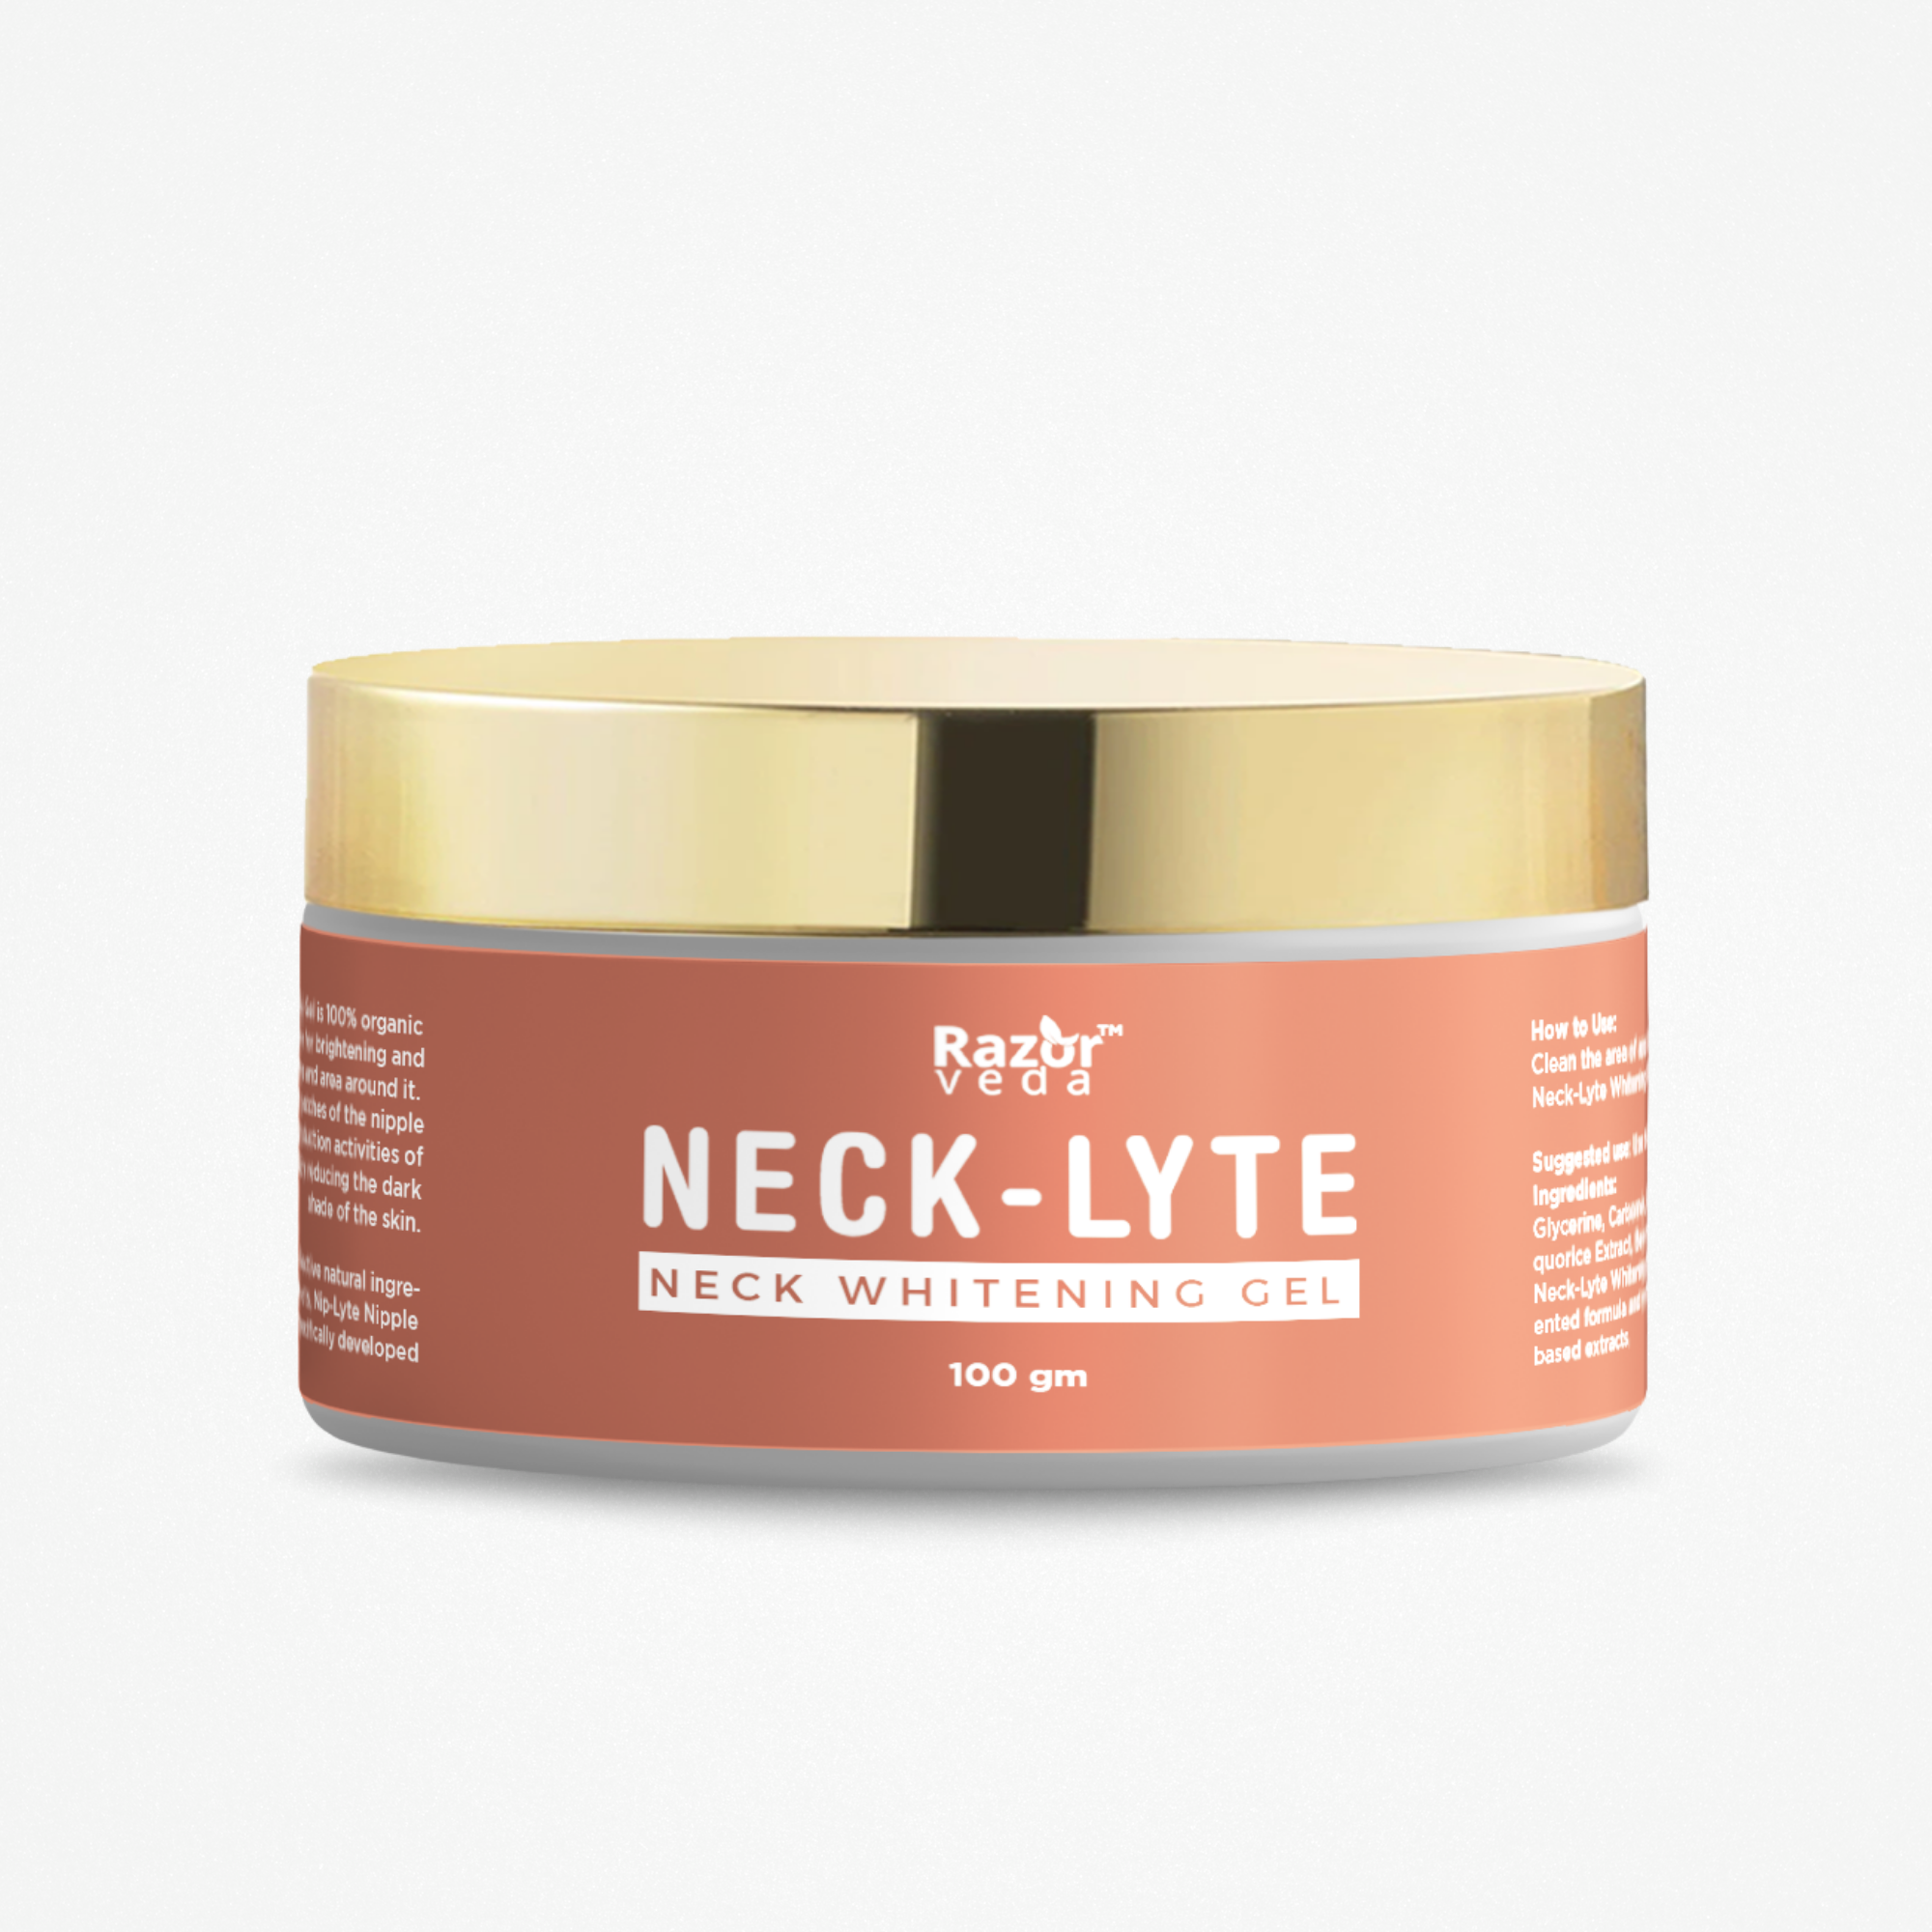 Neck-Lyte Neck Whitening & Brightening Gel Razorveda